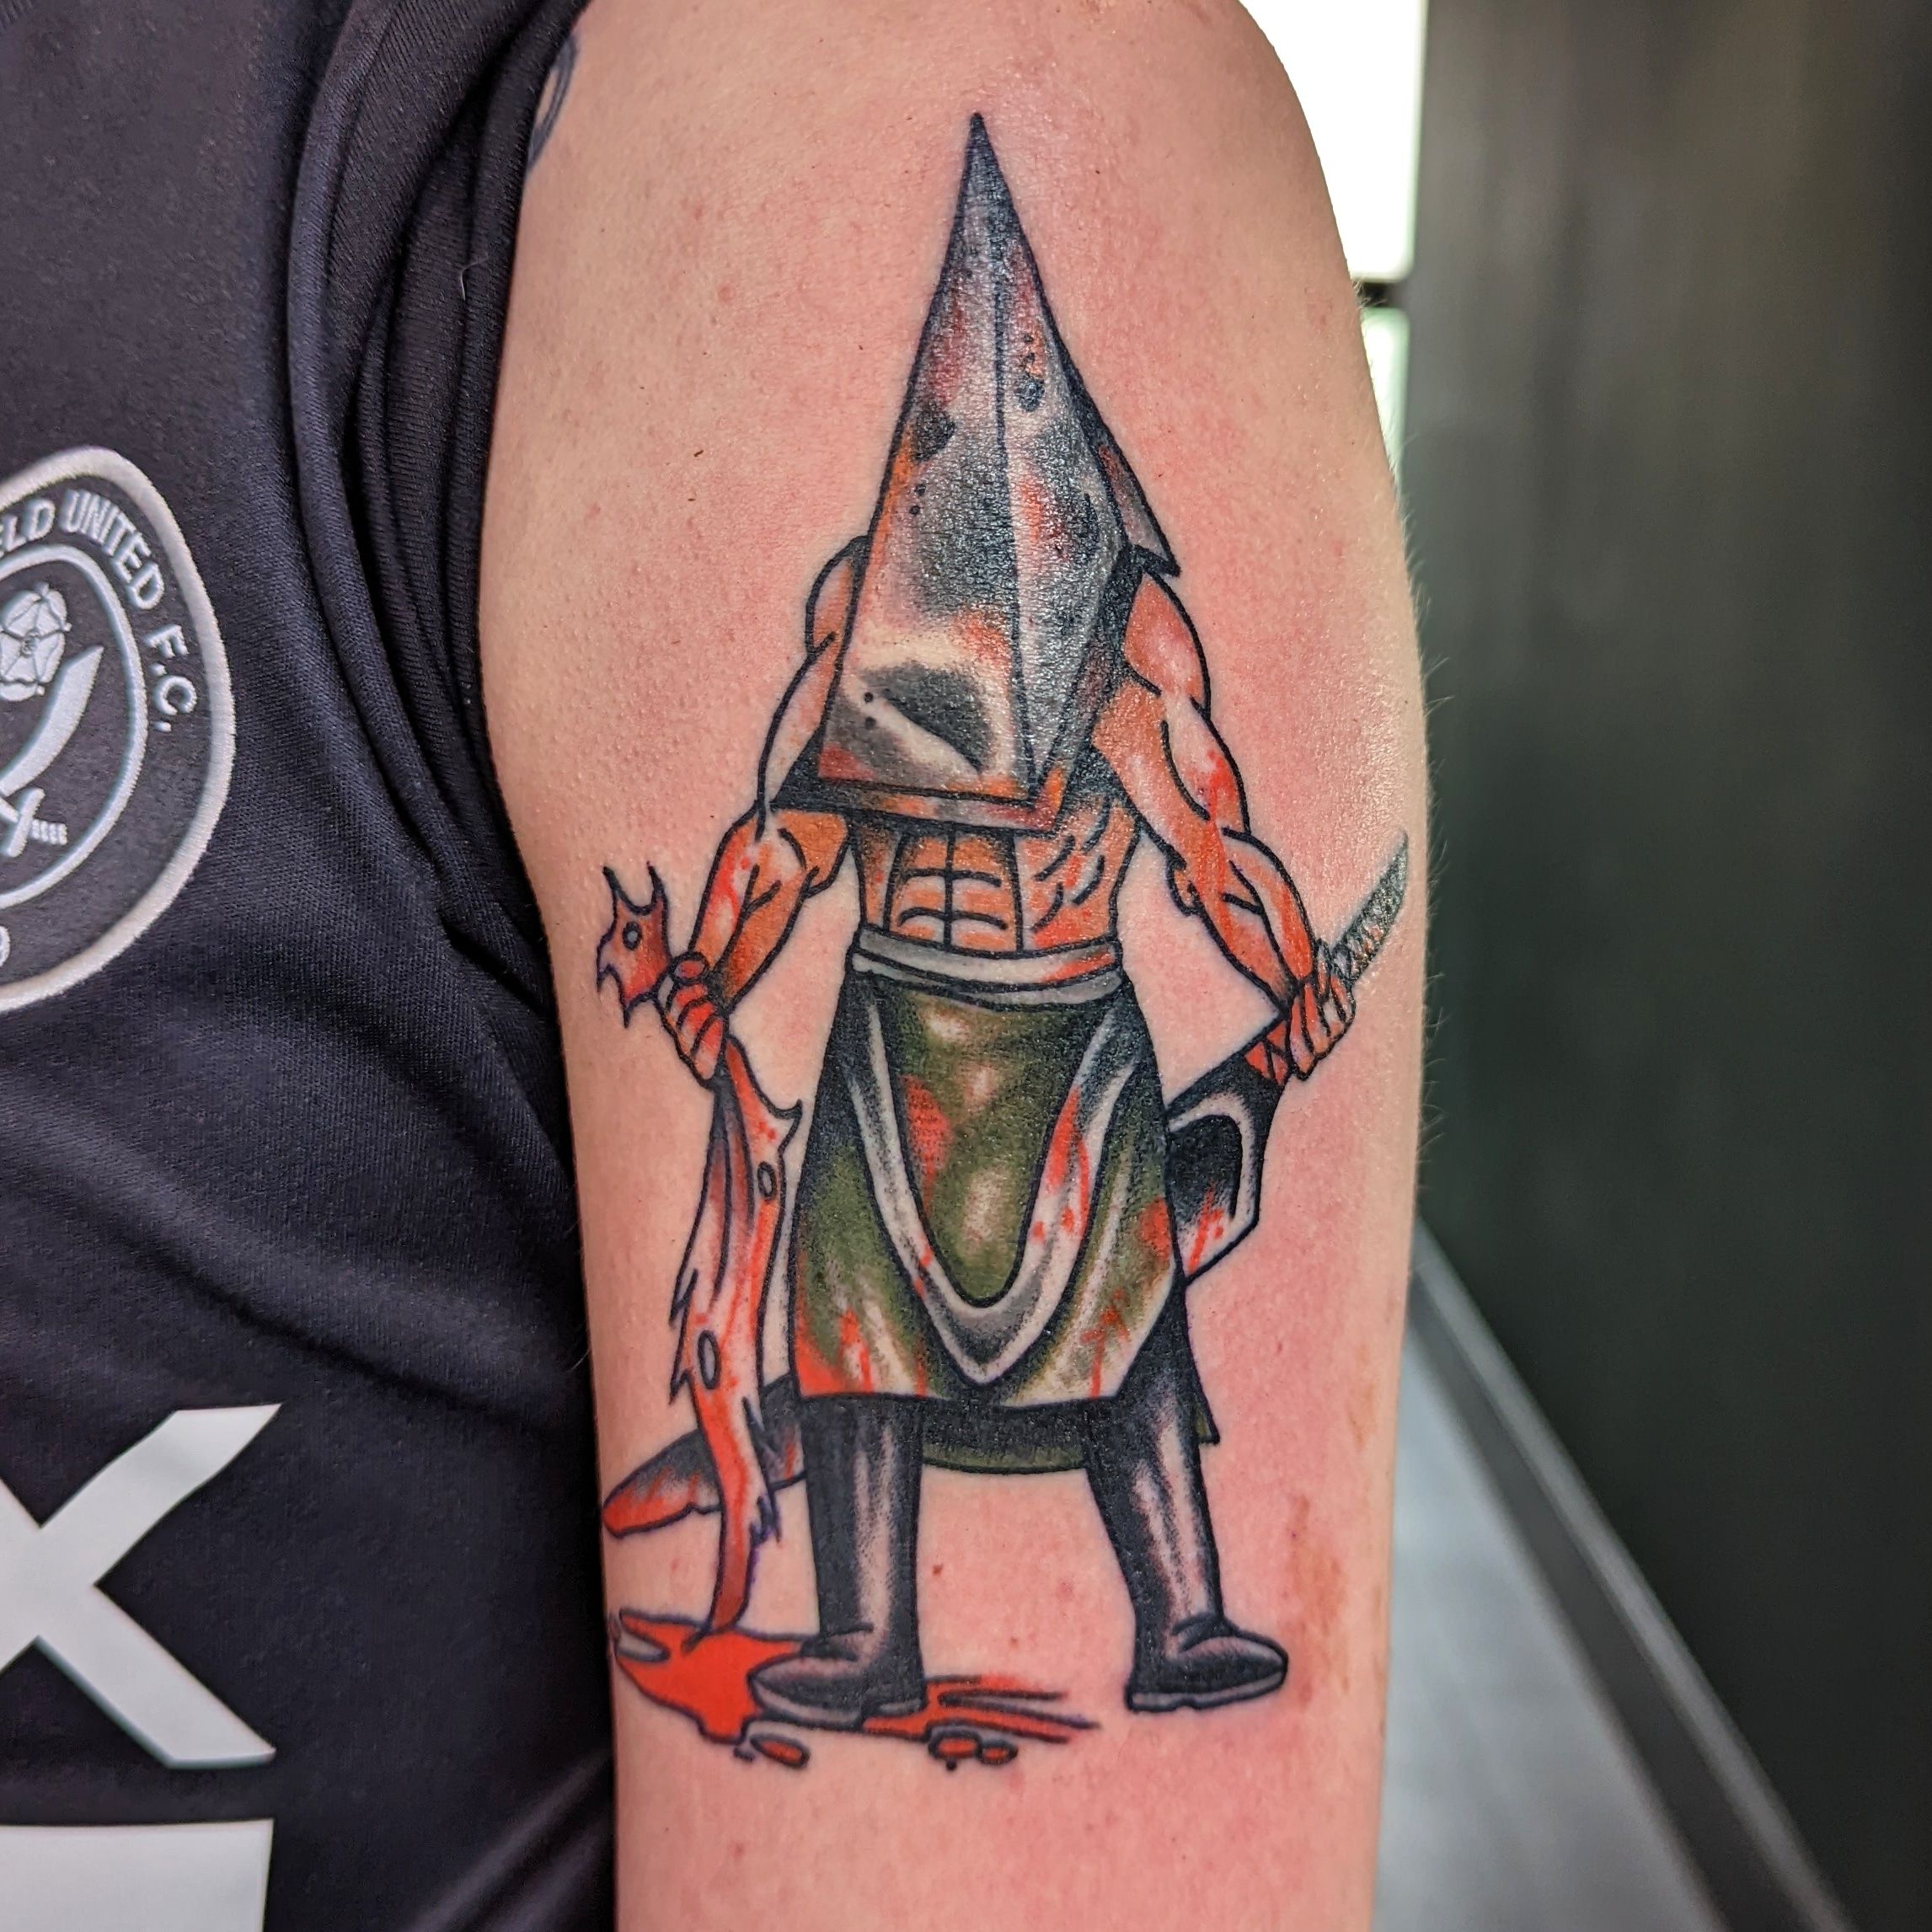 Pyramid head for @jacob.fln love doing gaming/anime colour tattoos 😍😍 # tattoo #ink #traditional #tattooartist #tattooart #tattooid... | Instagram